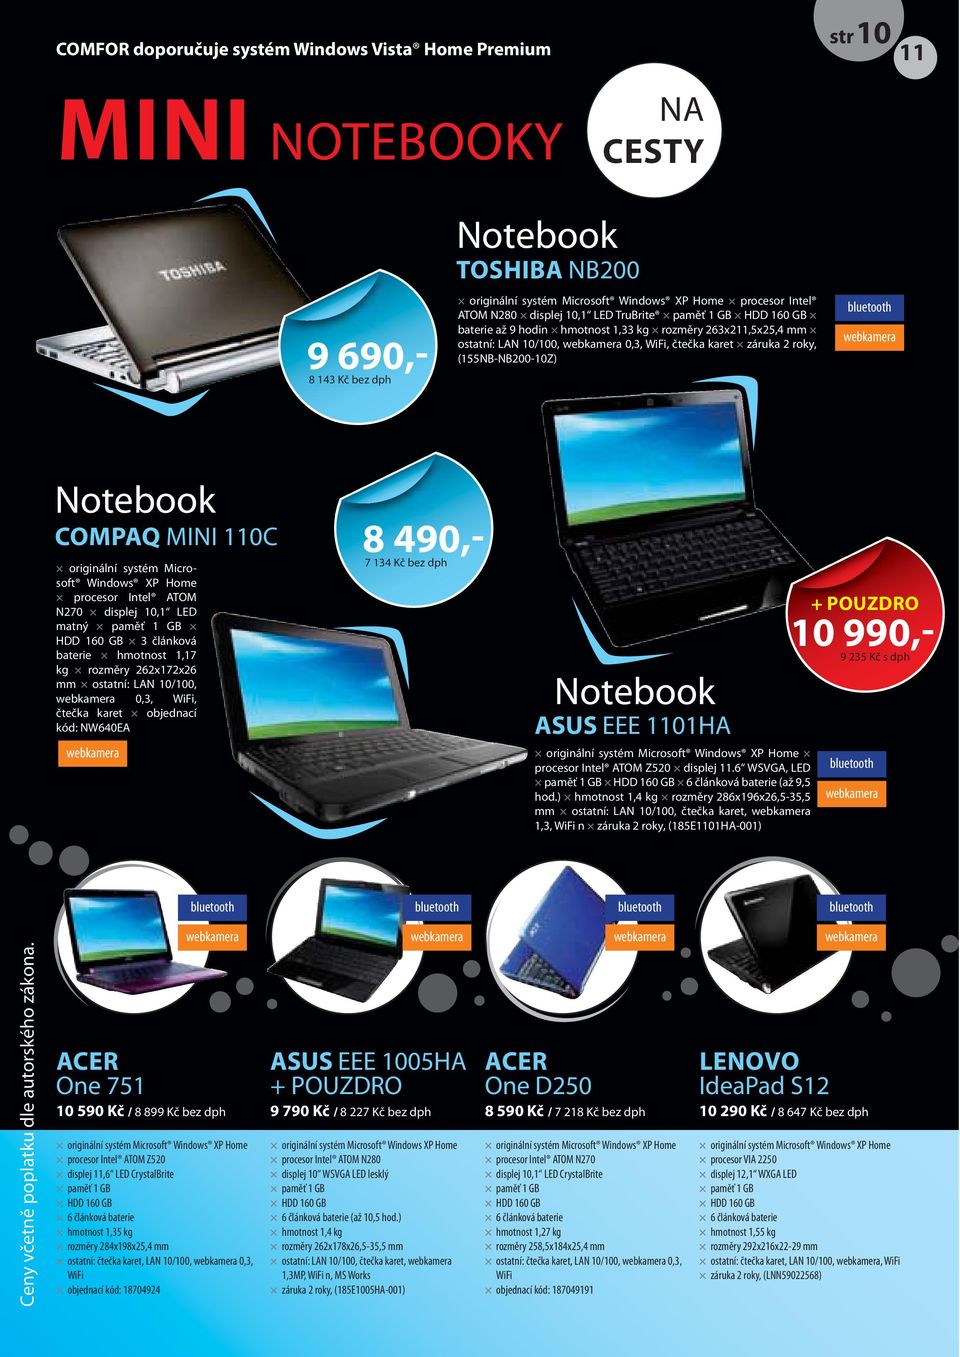 Notebook COMPAQ MINI 110C originální systém Microsoft Windows XP Home procesor Intel ATOM N270 displej 10,1 LED matný paměť 1 GB HDD 160 GB 3 článková baterie hmotnost 1,17 kg rozměry 262x172x26 mm